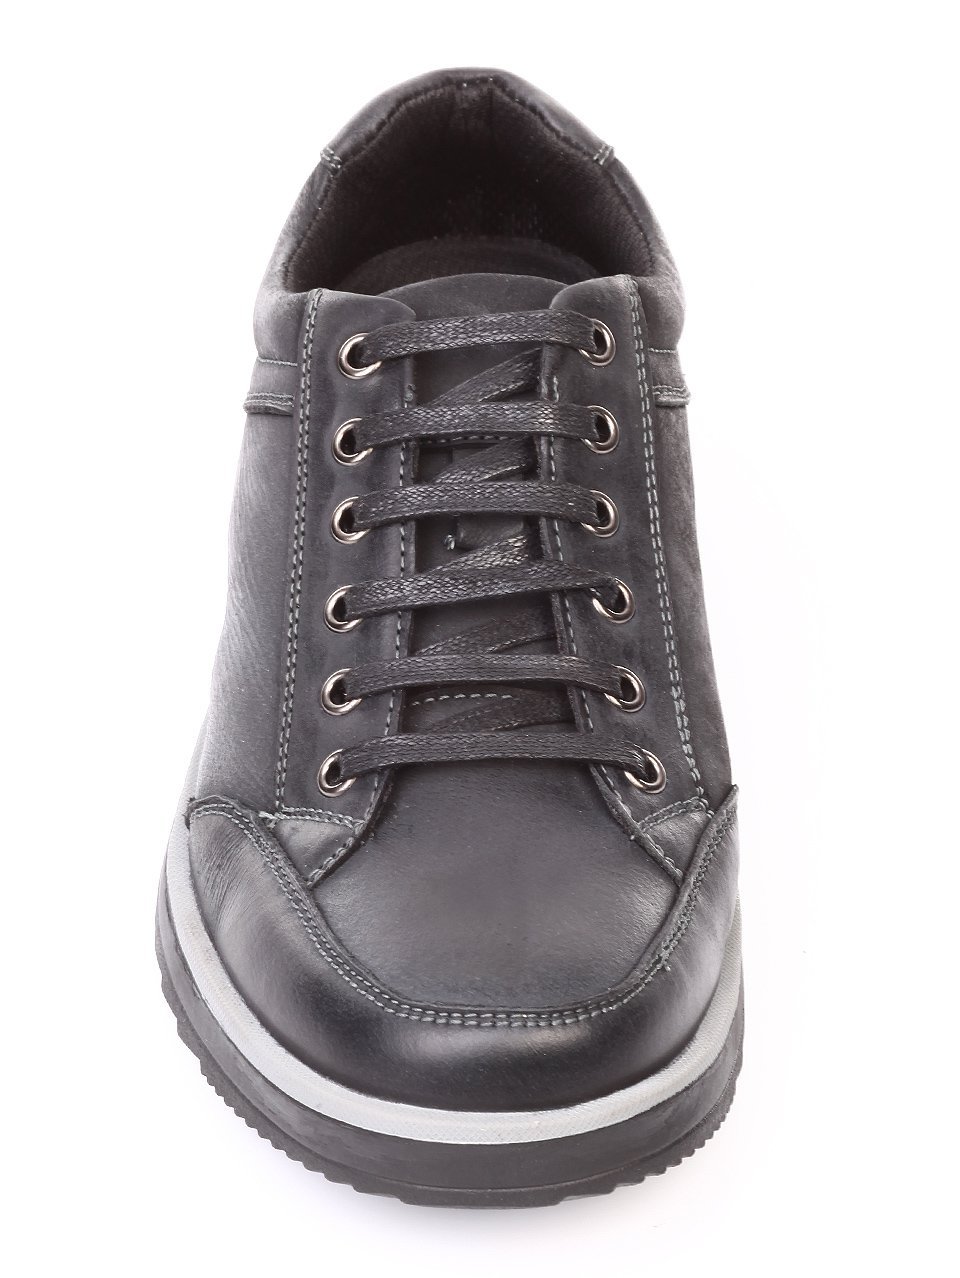 Ежедневни мъжки обувки от естествен набук в черно 7N-17785 black